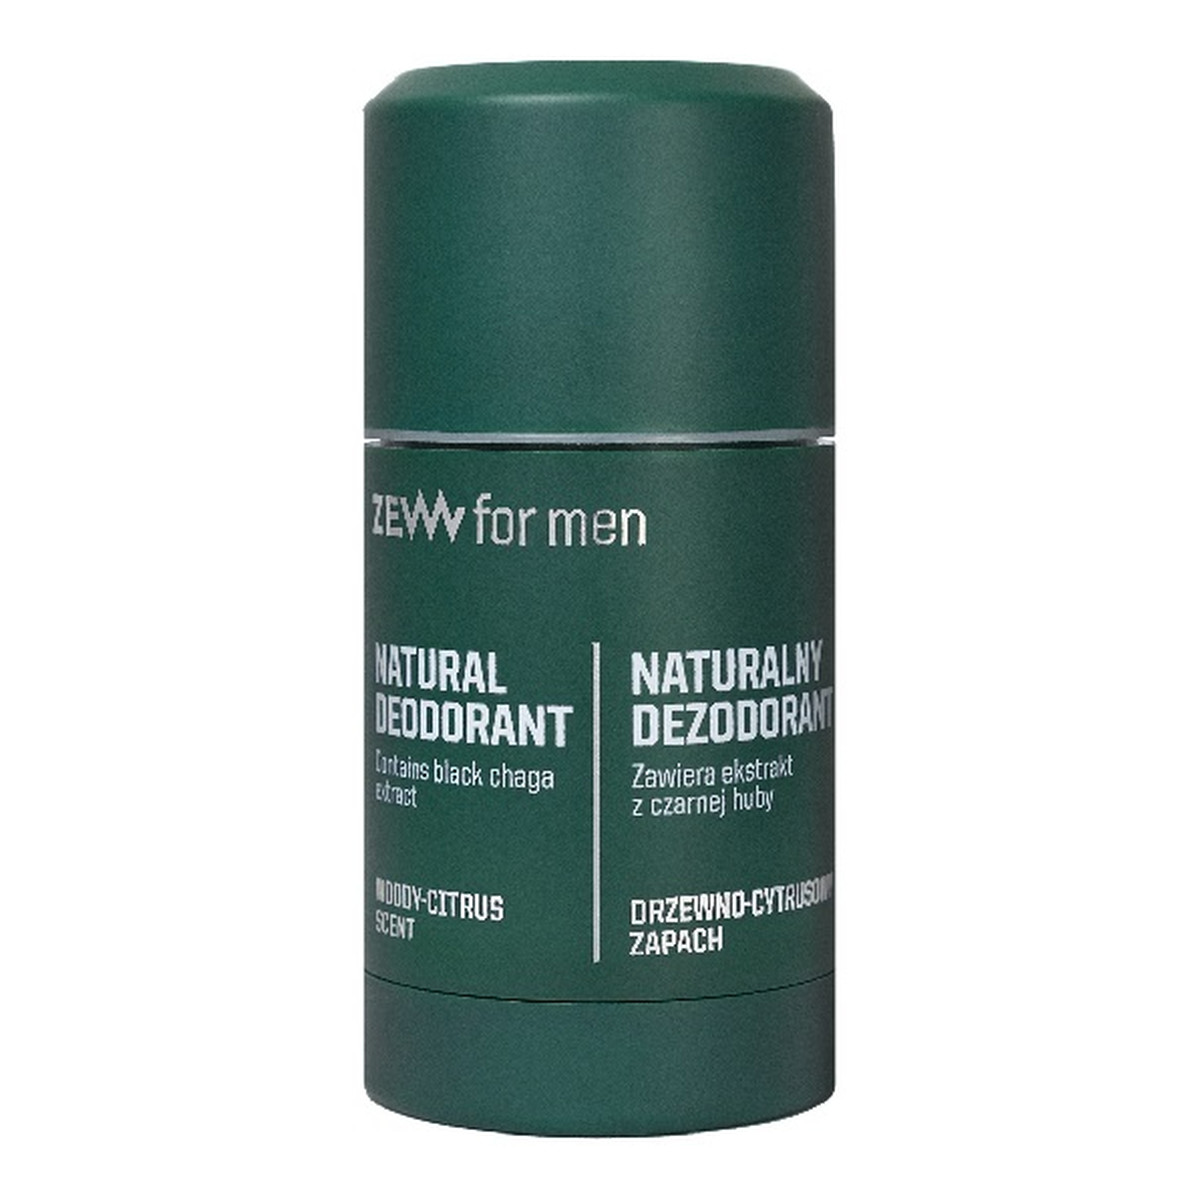 Zew For Men Naturalny dezodorant w sztyfcie z czarną hubą 80g